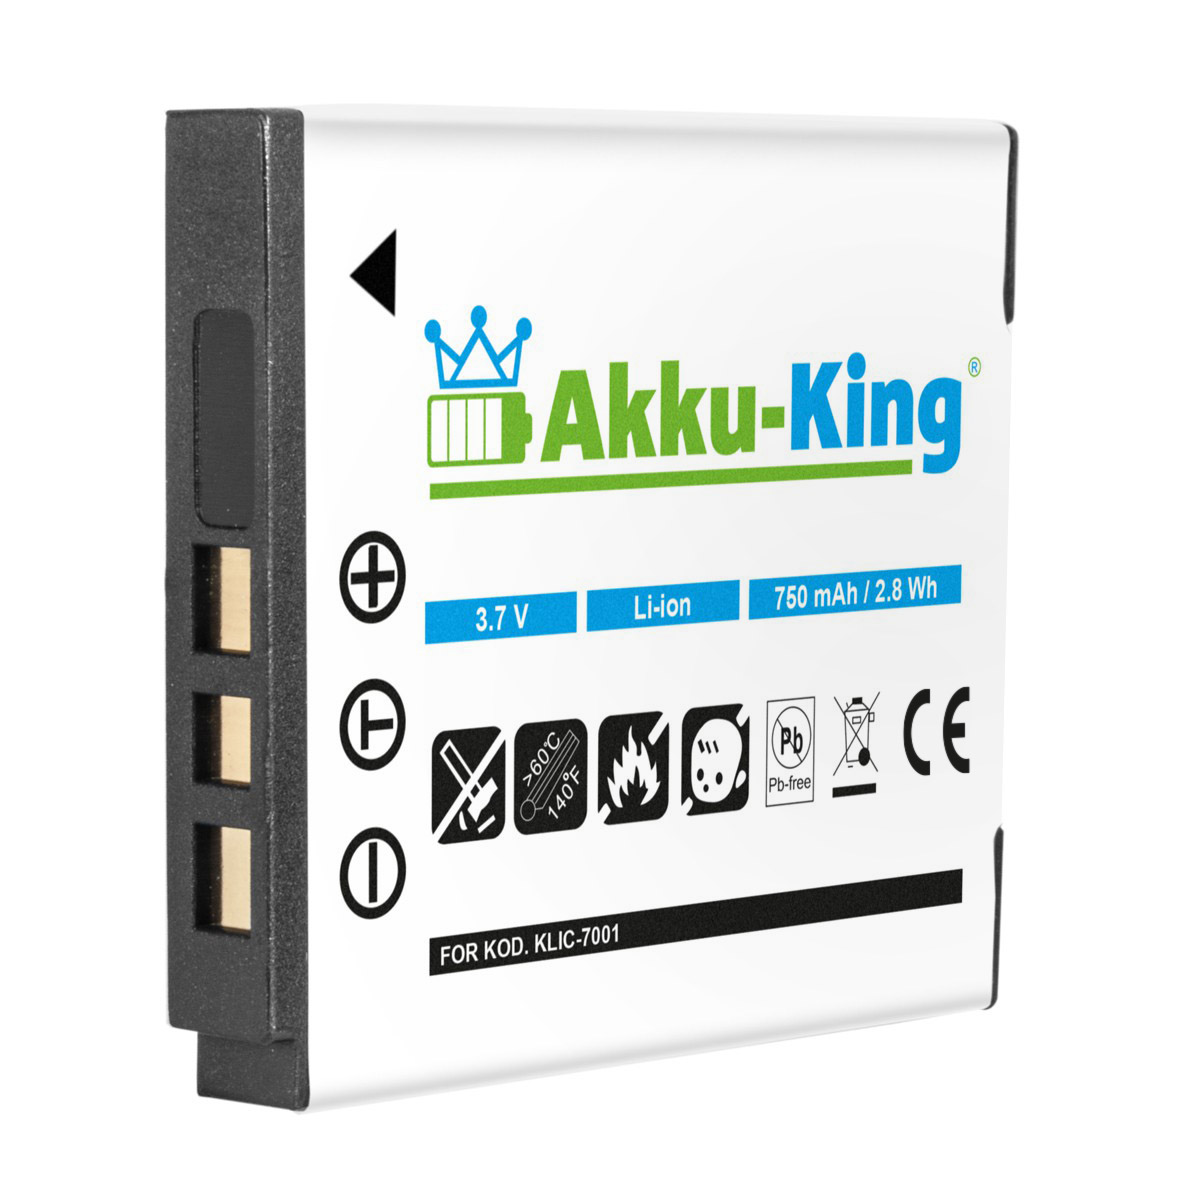 750mAh Li-Ion AKKU-KING Kamera-Akku, Kodak mit Klic-7001 Volt, Akku 3.7 kompatibel